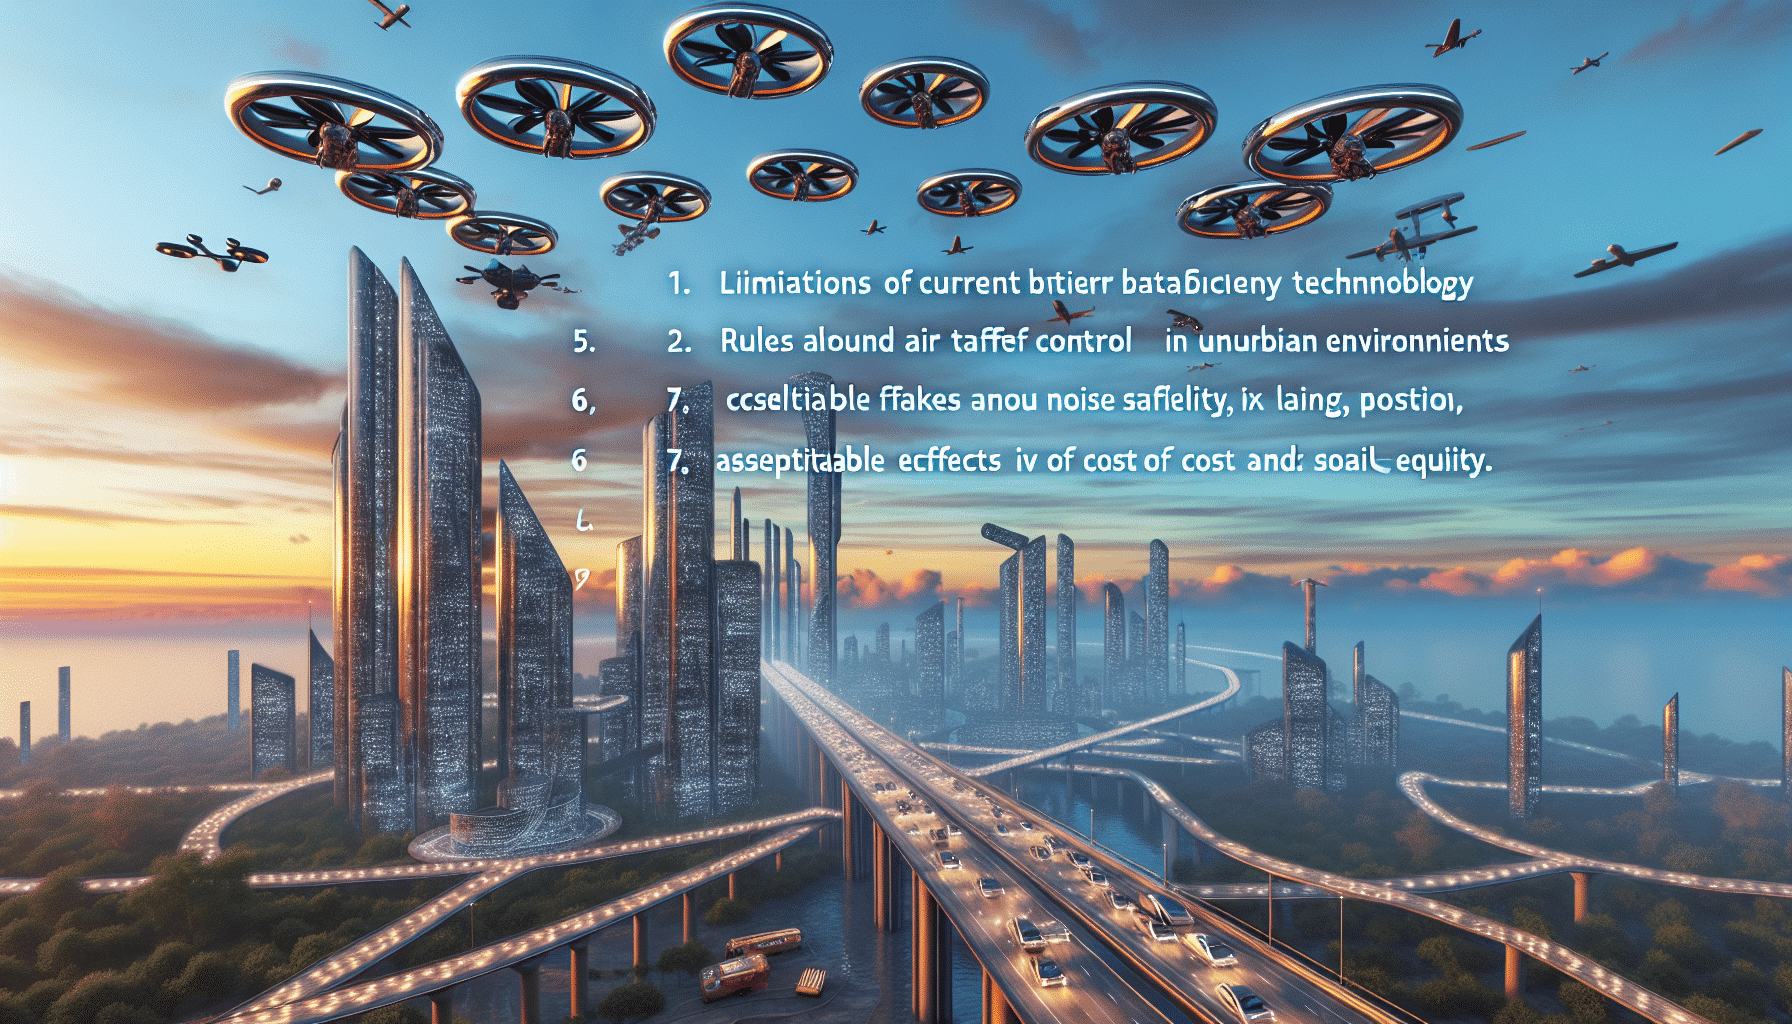 descubre los 7 problemas que necesitan ser resueltos antes de lograr la realidad de los autos voladores.